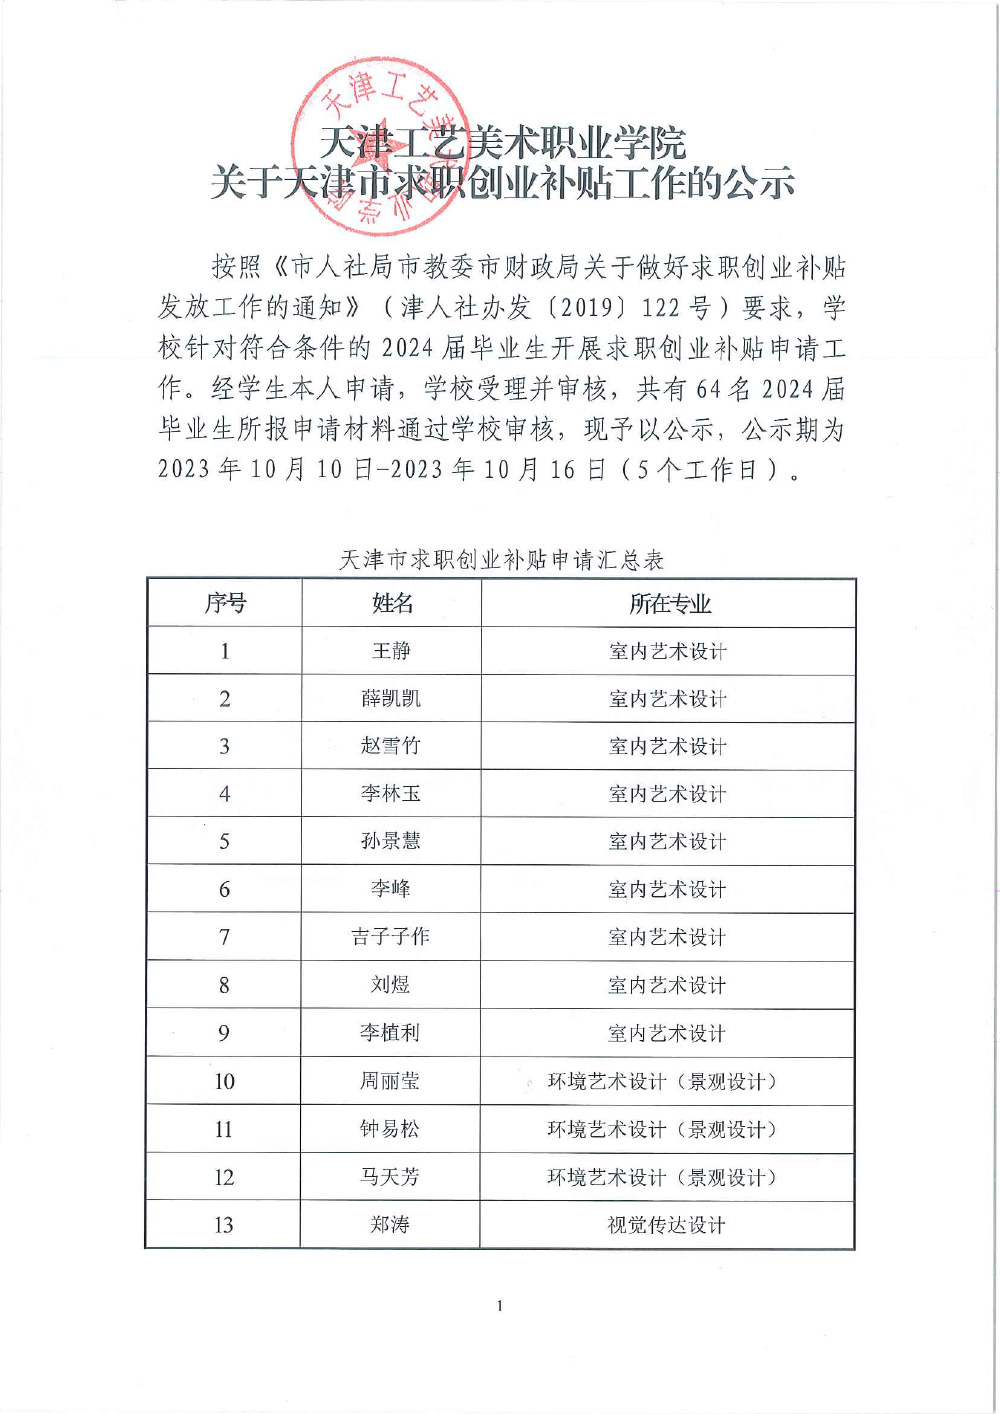 关于天津市求职创业补贴工作的公示(1)-1.jpg